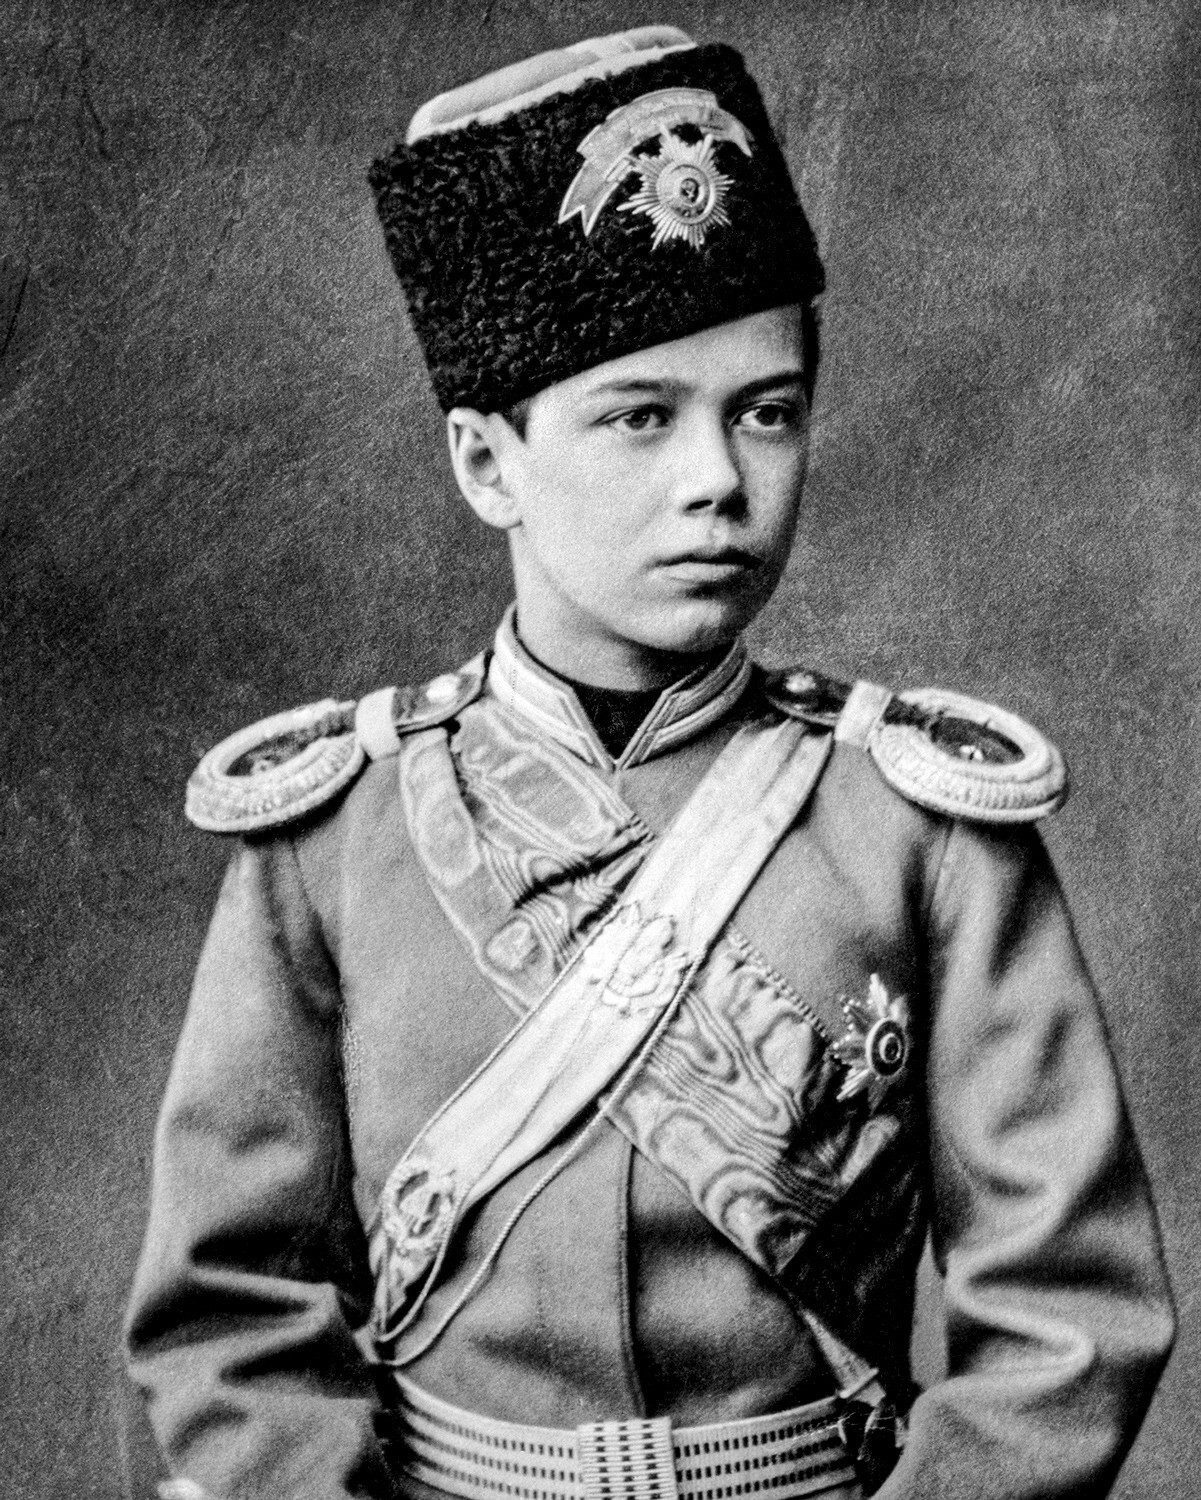 Nicolás II con el uniforme del ejército ruso, cuando tenía 13 años. Fotografía, hacia 1890.
